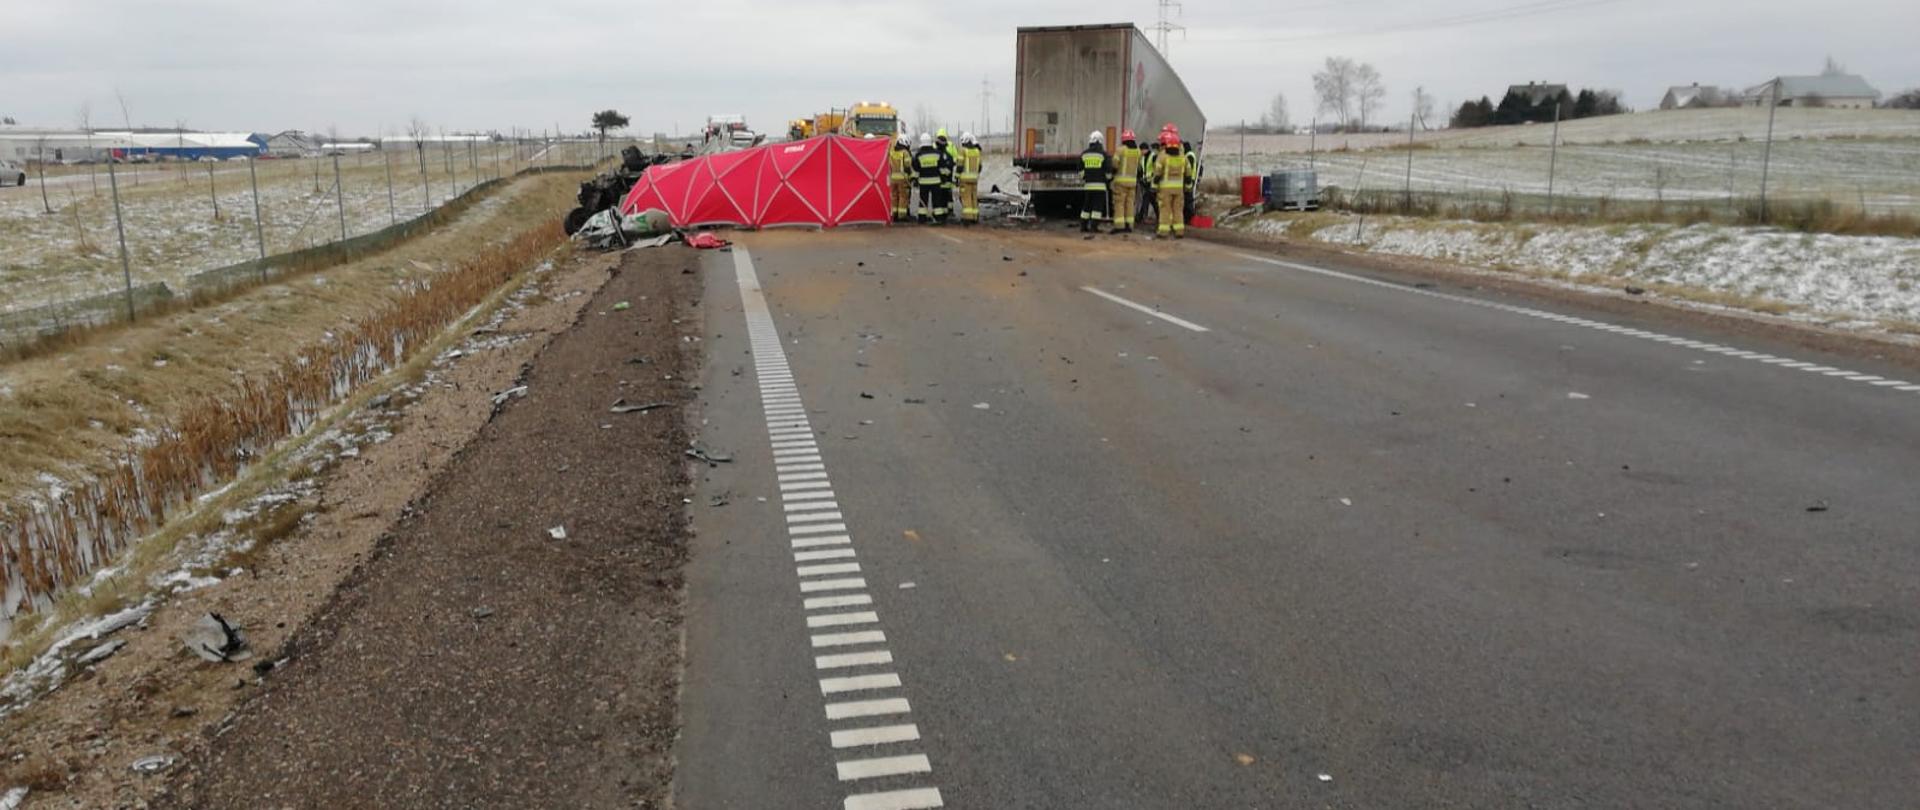 Na zdjęciu widoczny jest wrak samochodu ciężarowego, osobowego oraz strażaków podczas działań ratowniczo gaśniczych.